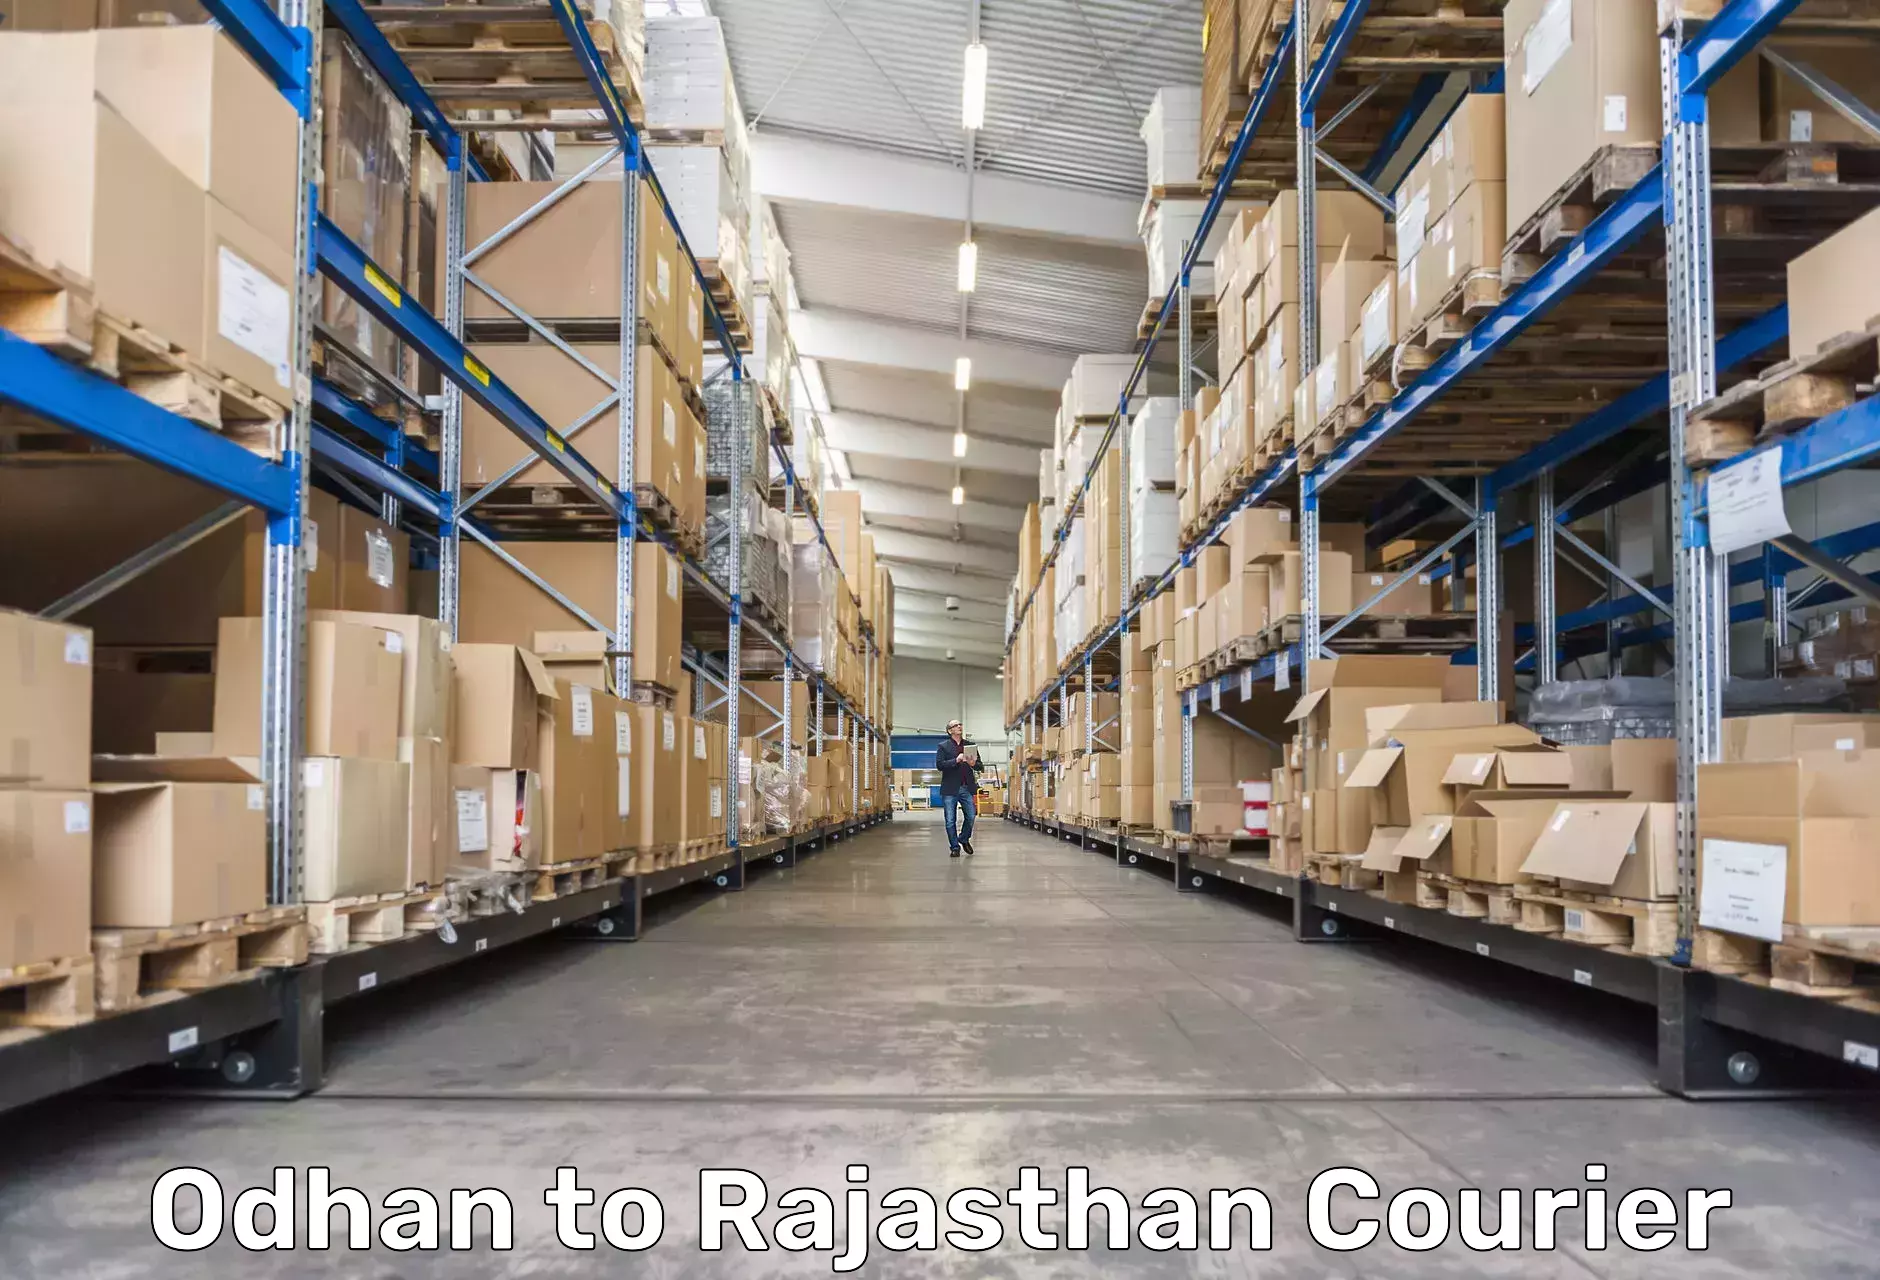 Versatile courier offerings Odhan to Jaipur